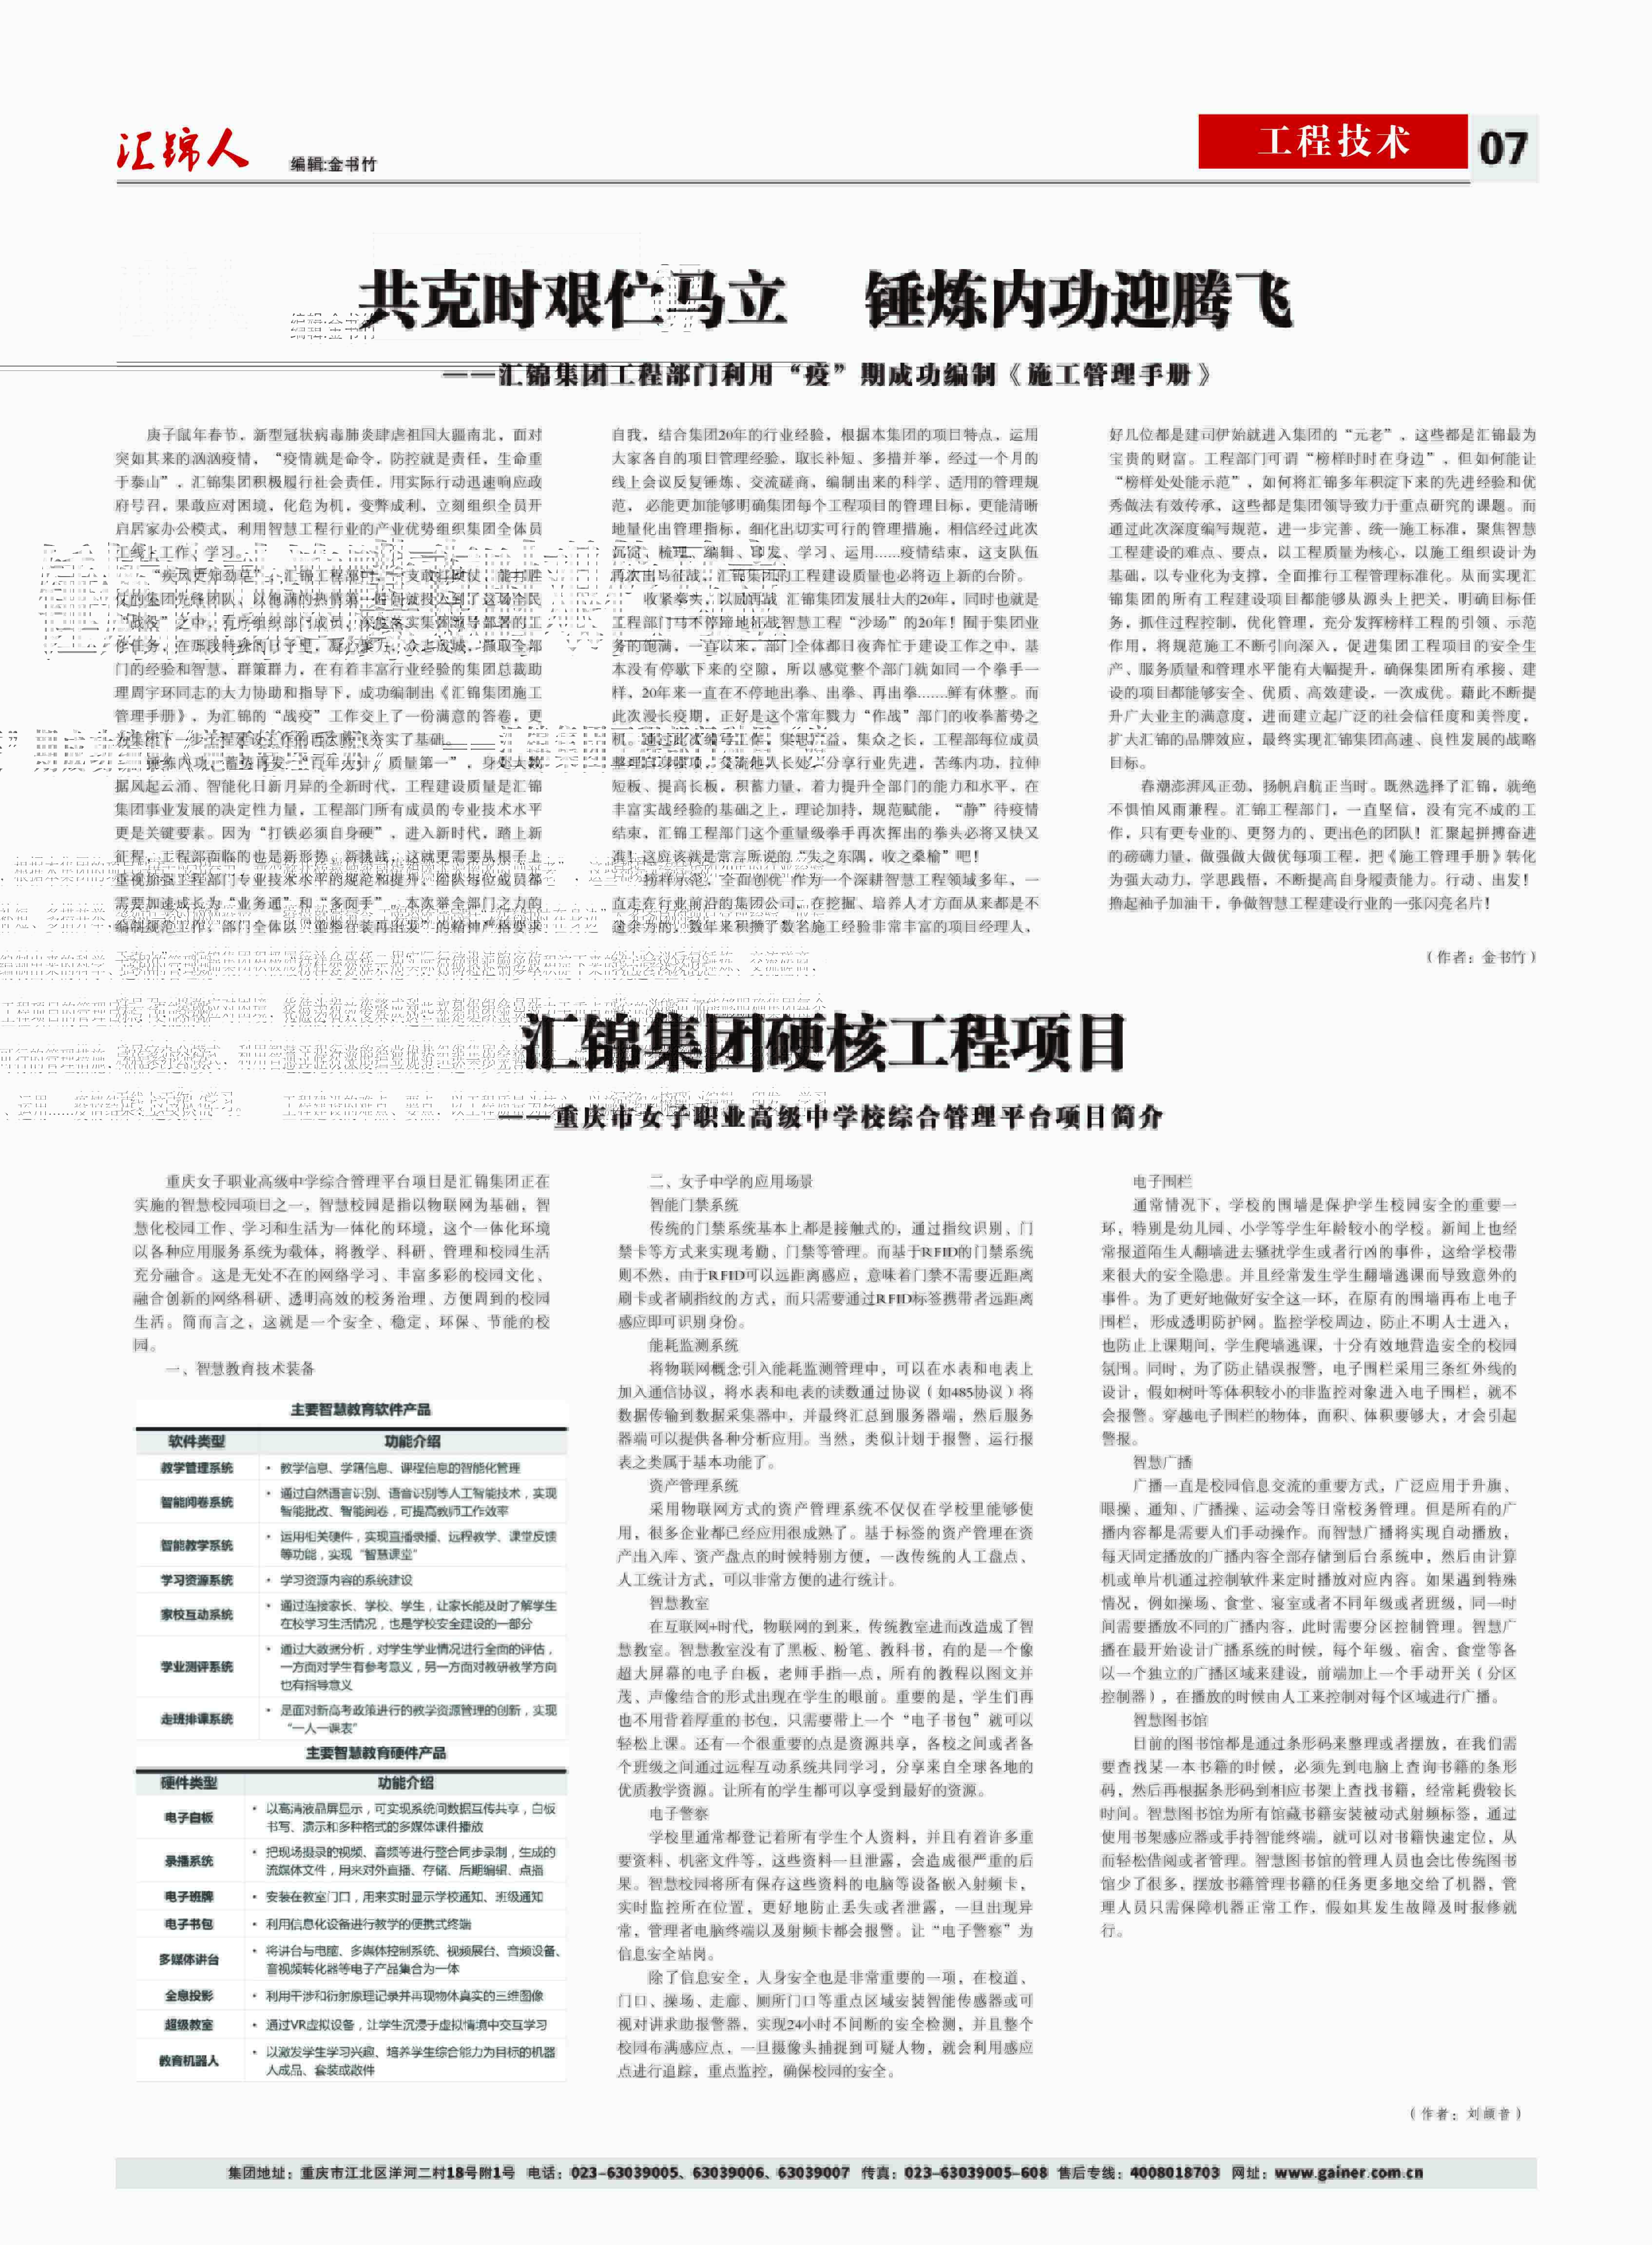 汇锦期刊第16期-修改版2版(3)-7.jpg